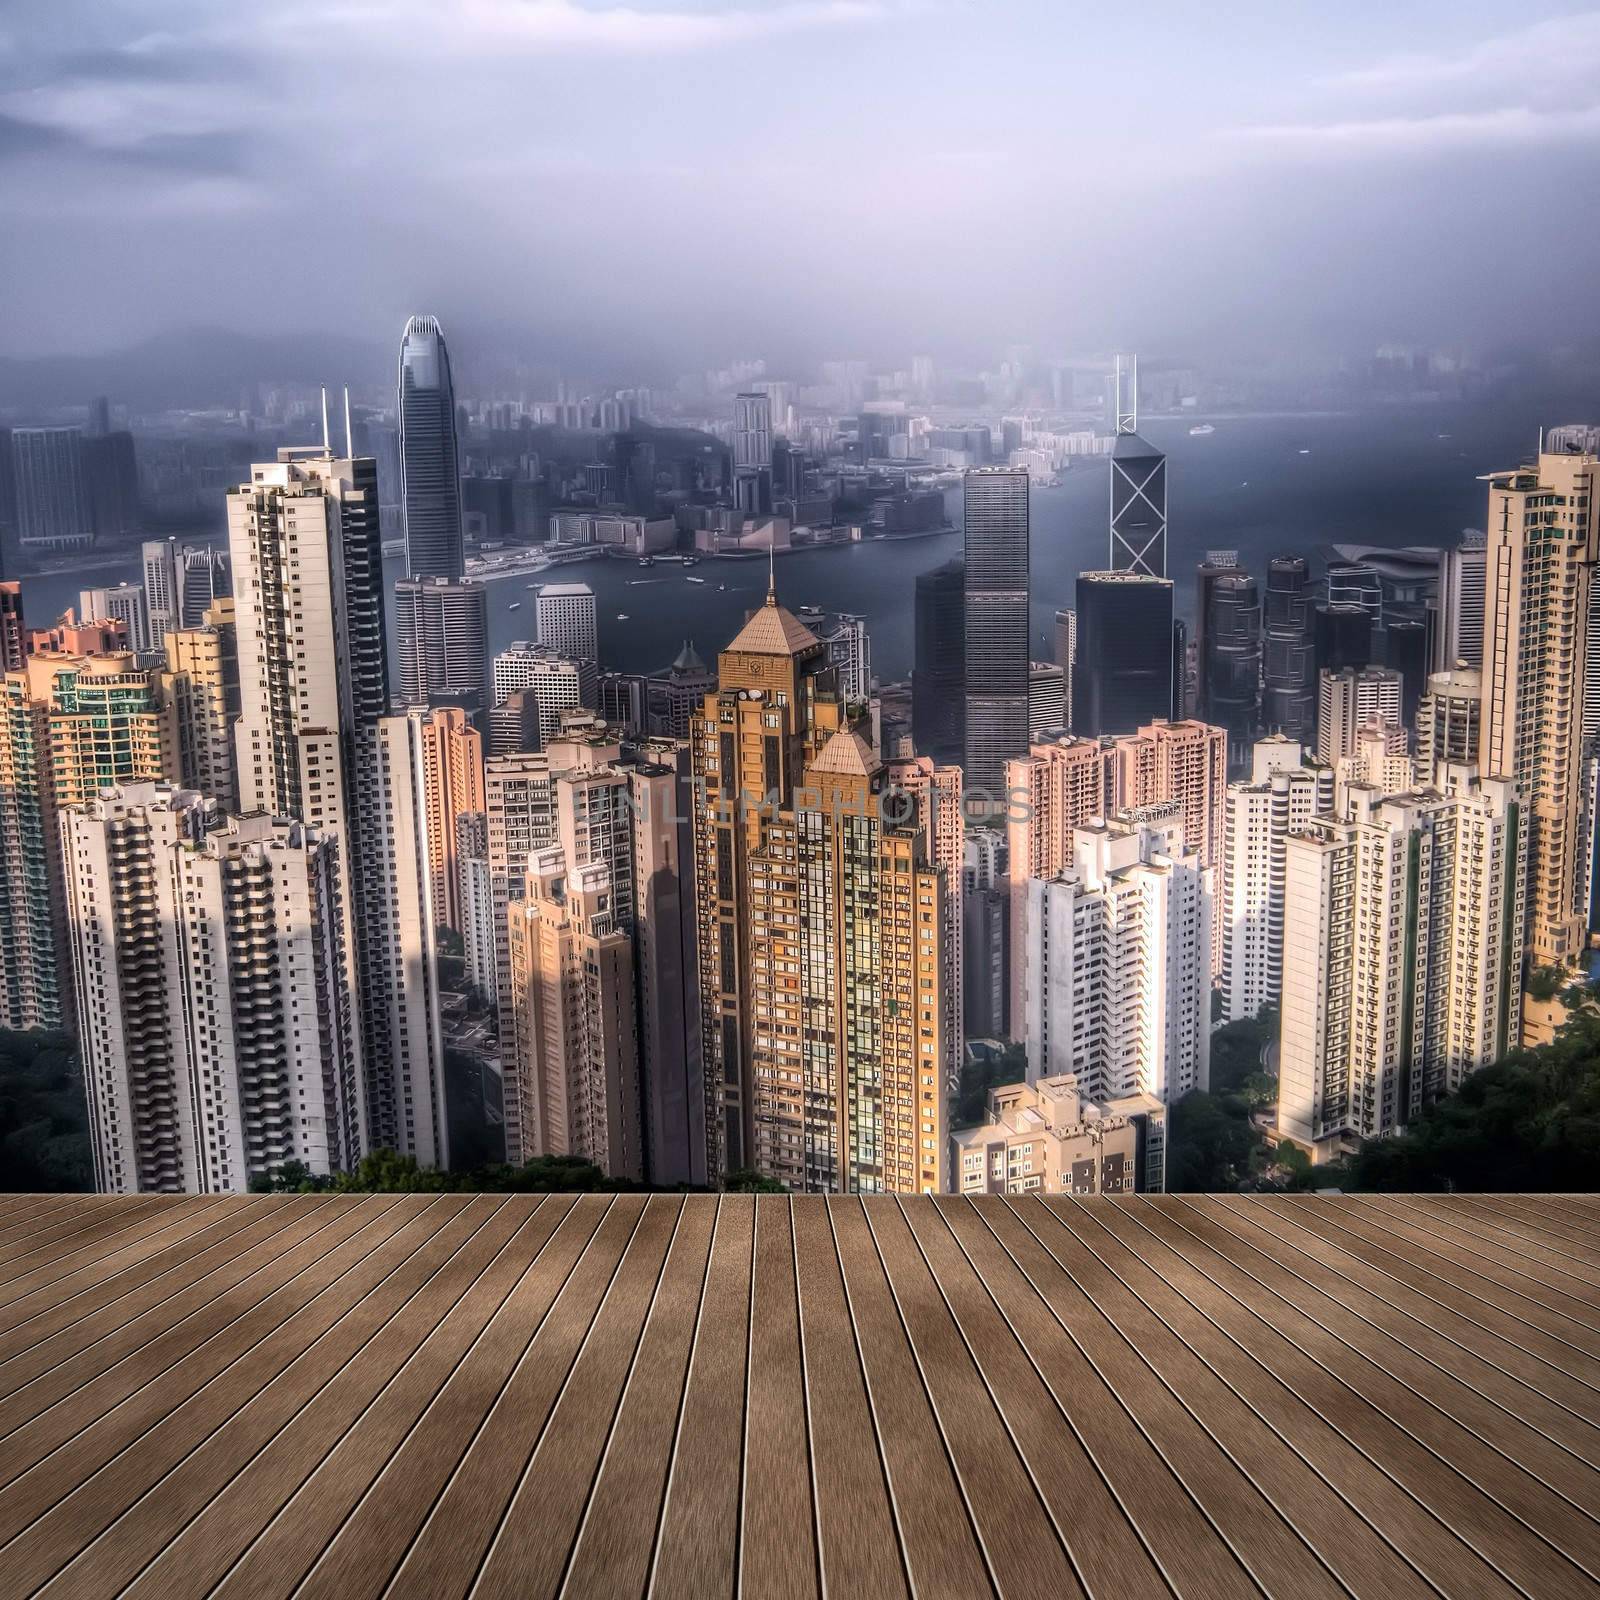 Hong Kong skyscrapers by elwynn